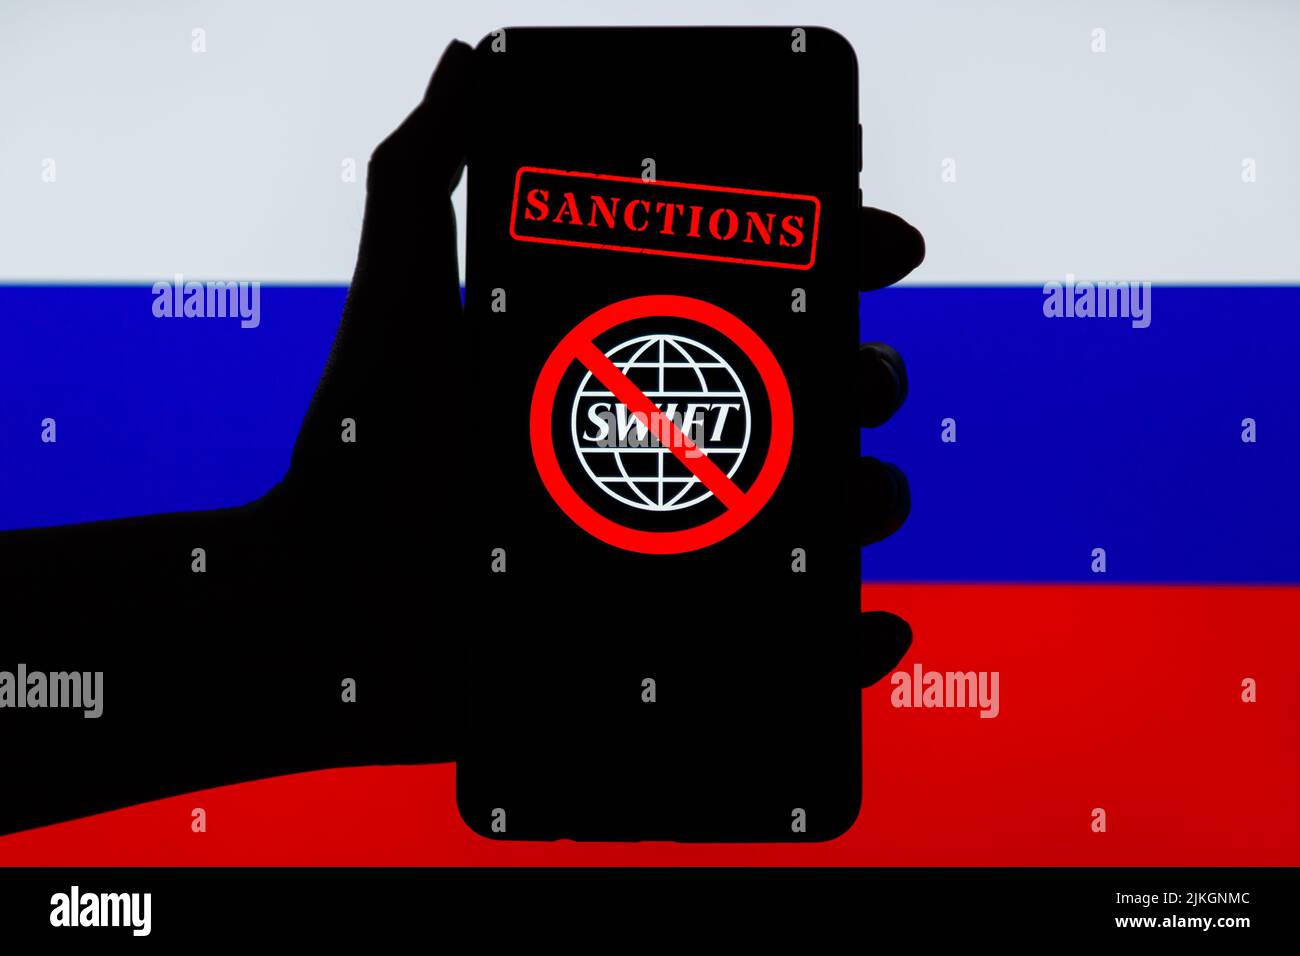 Ucraina, Kiev - Febbraio, 23 2022: Silhouette di mano nera mobile con logo SWIFT barrato e bandiera russa sullo sfondo. Sanzioni contro la Russia, disconnessione dal concetto SWIFT. Foto Stock